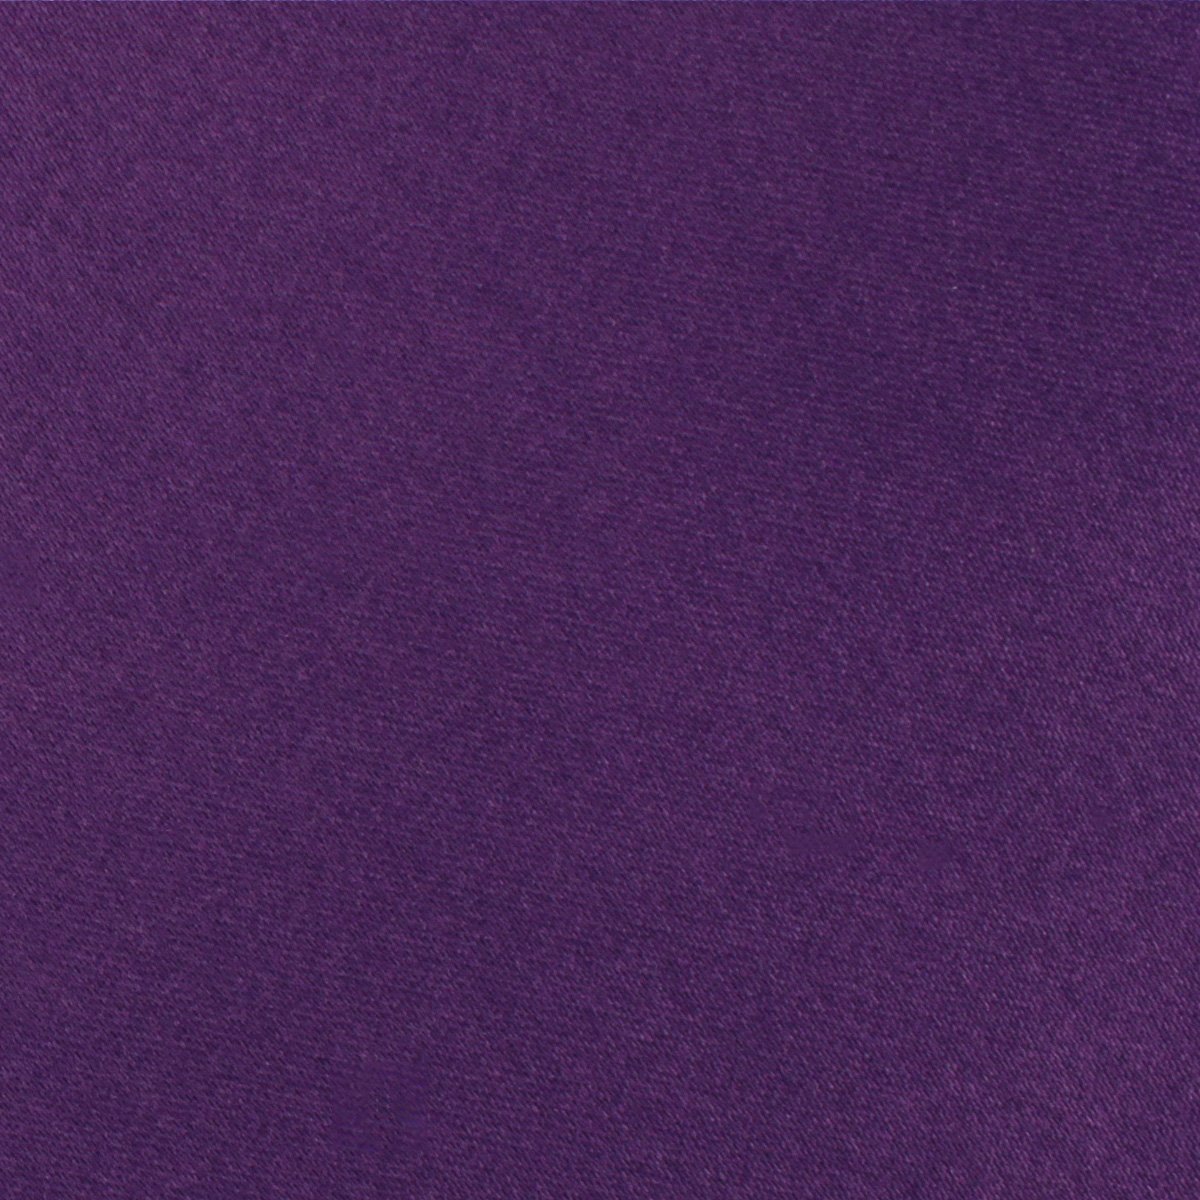 Eggplant Purple Satin Necktie Fabric